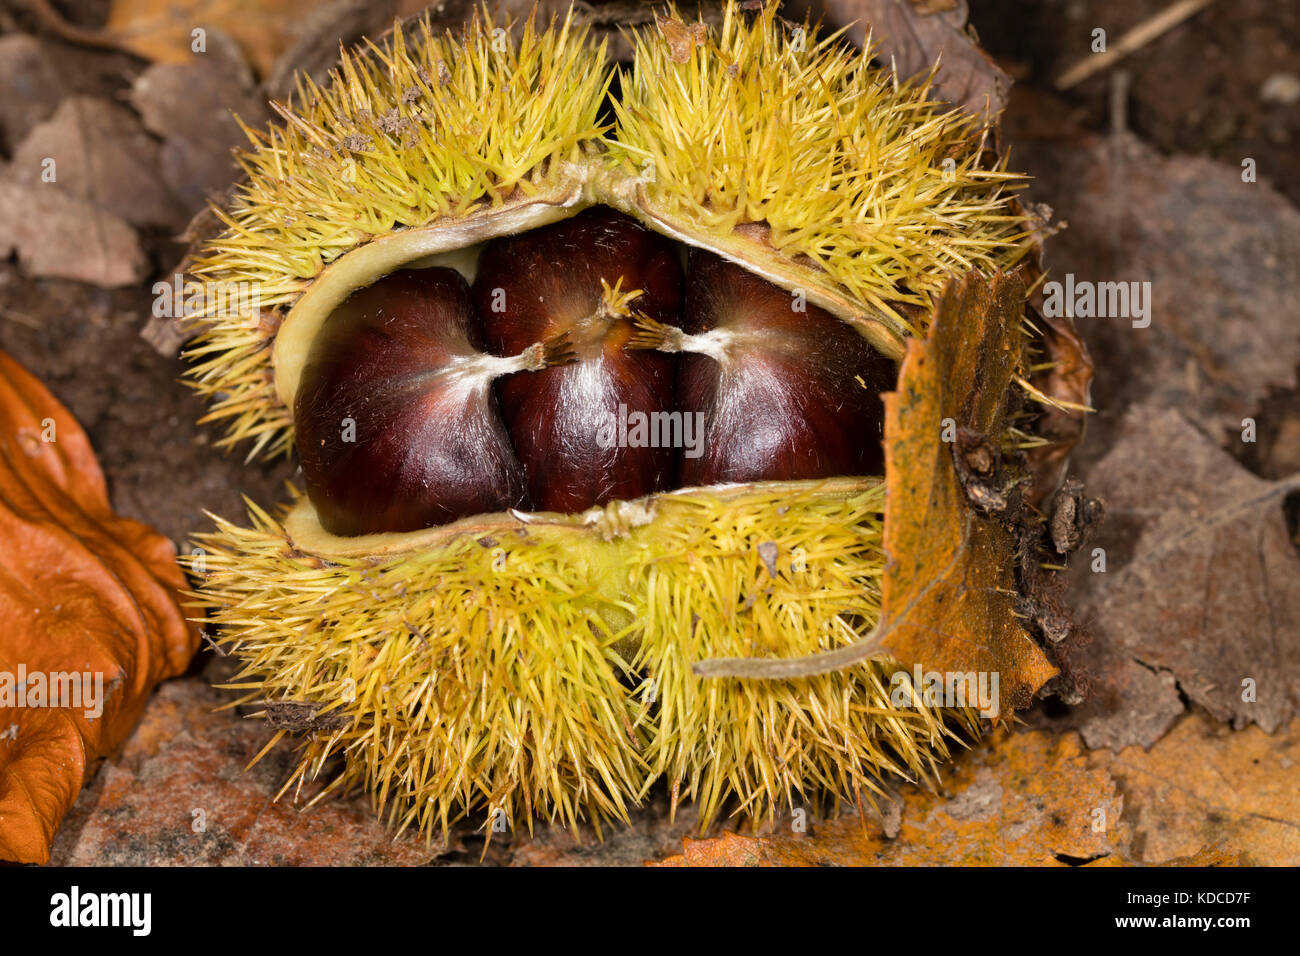 Appena scesi cupule spinoso di Castanea sativa caso con tre prodotti commestibili sweet chestnut dadi all'interno Foto Stock